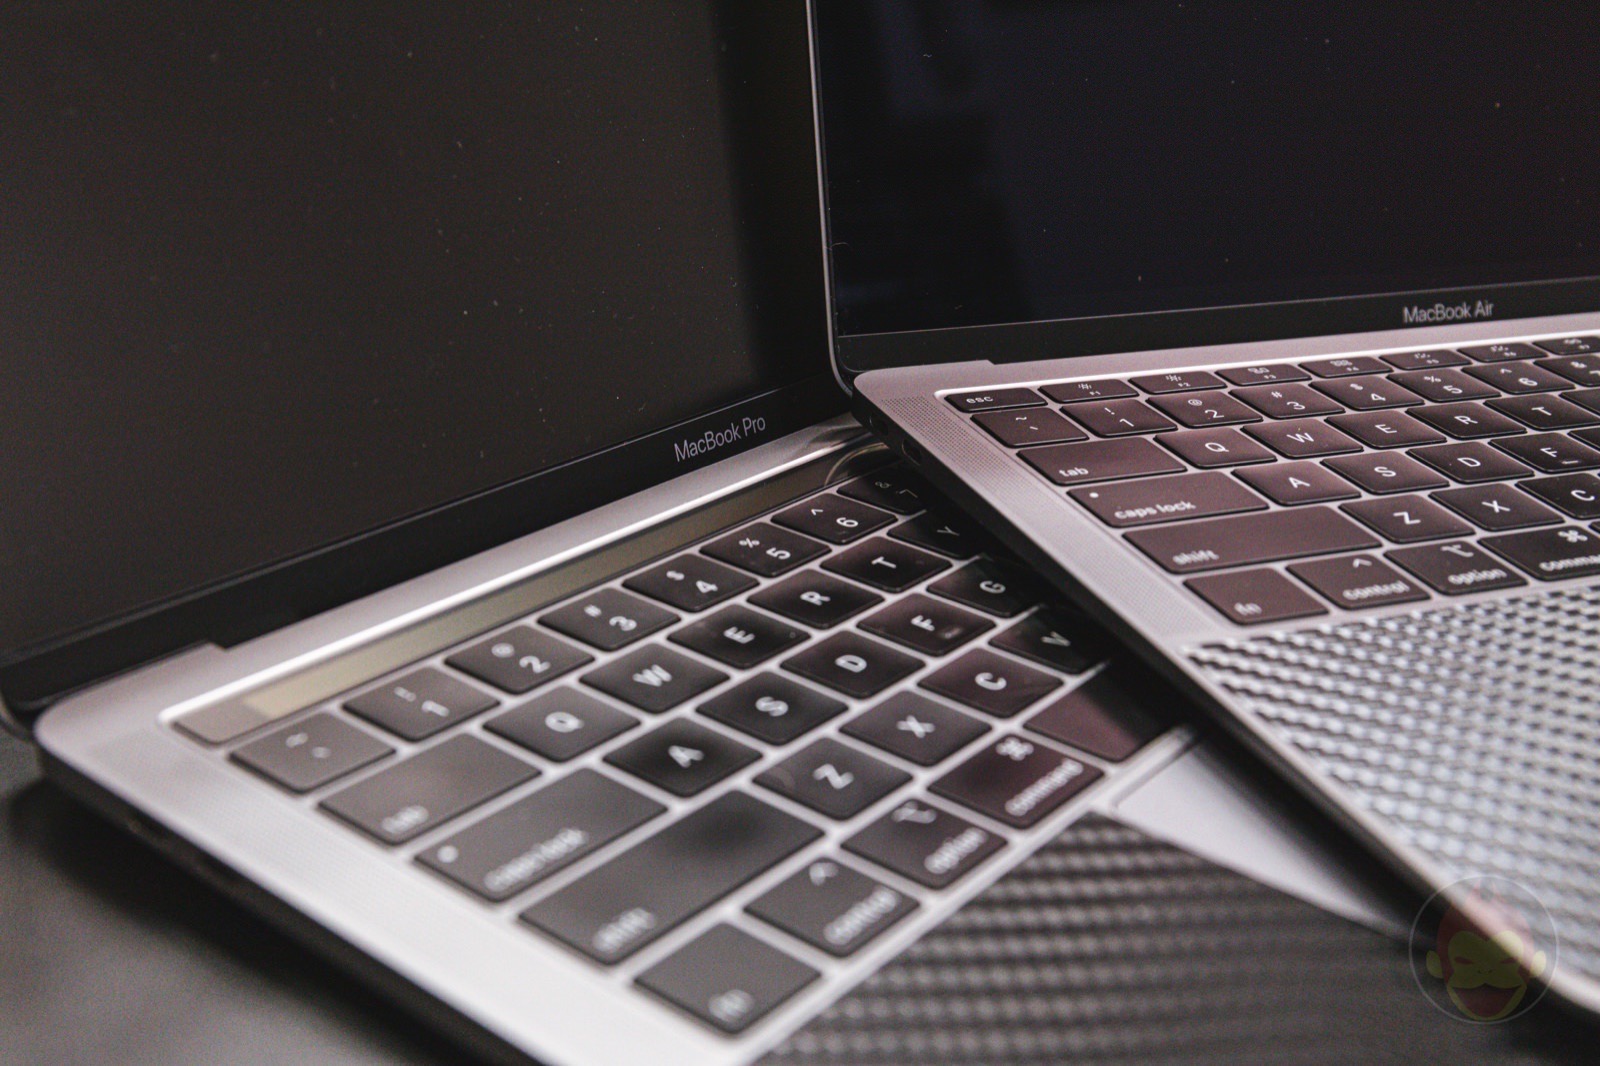 MacBookAir-and-MacbookPro-13inch-models-01.jpg